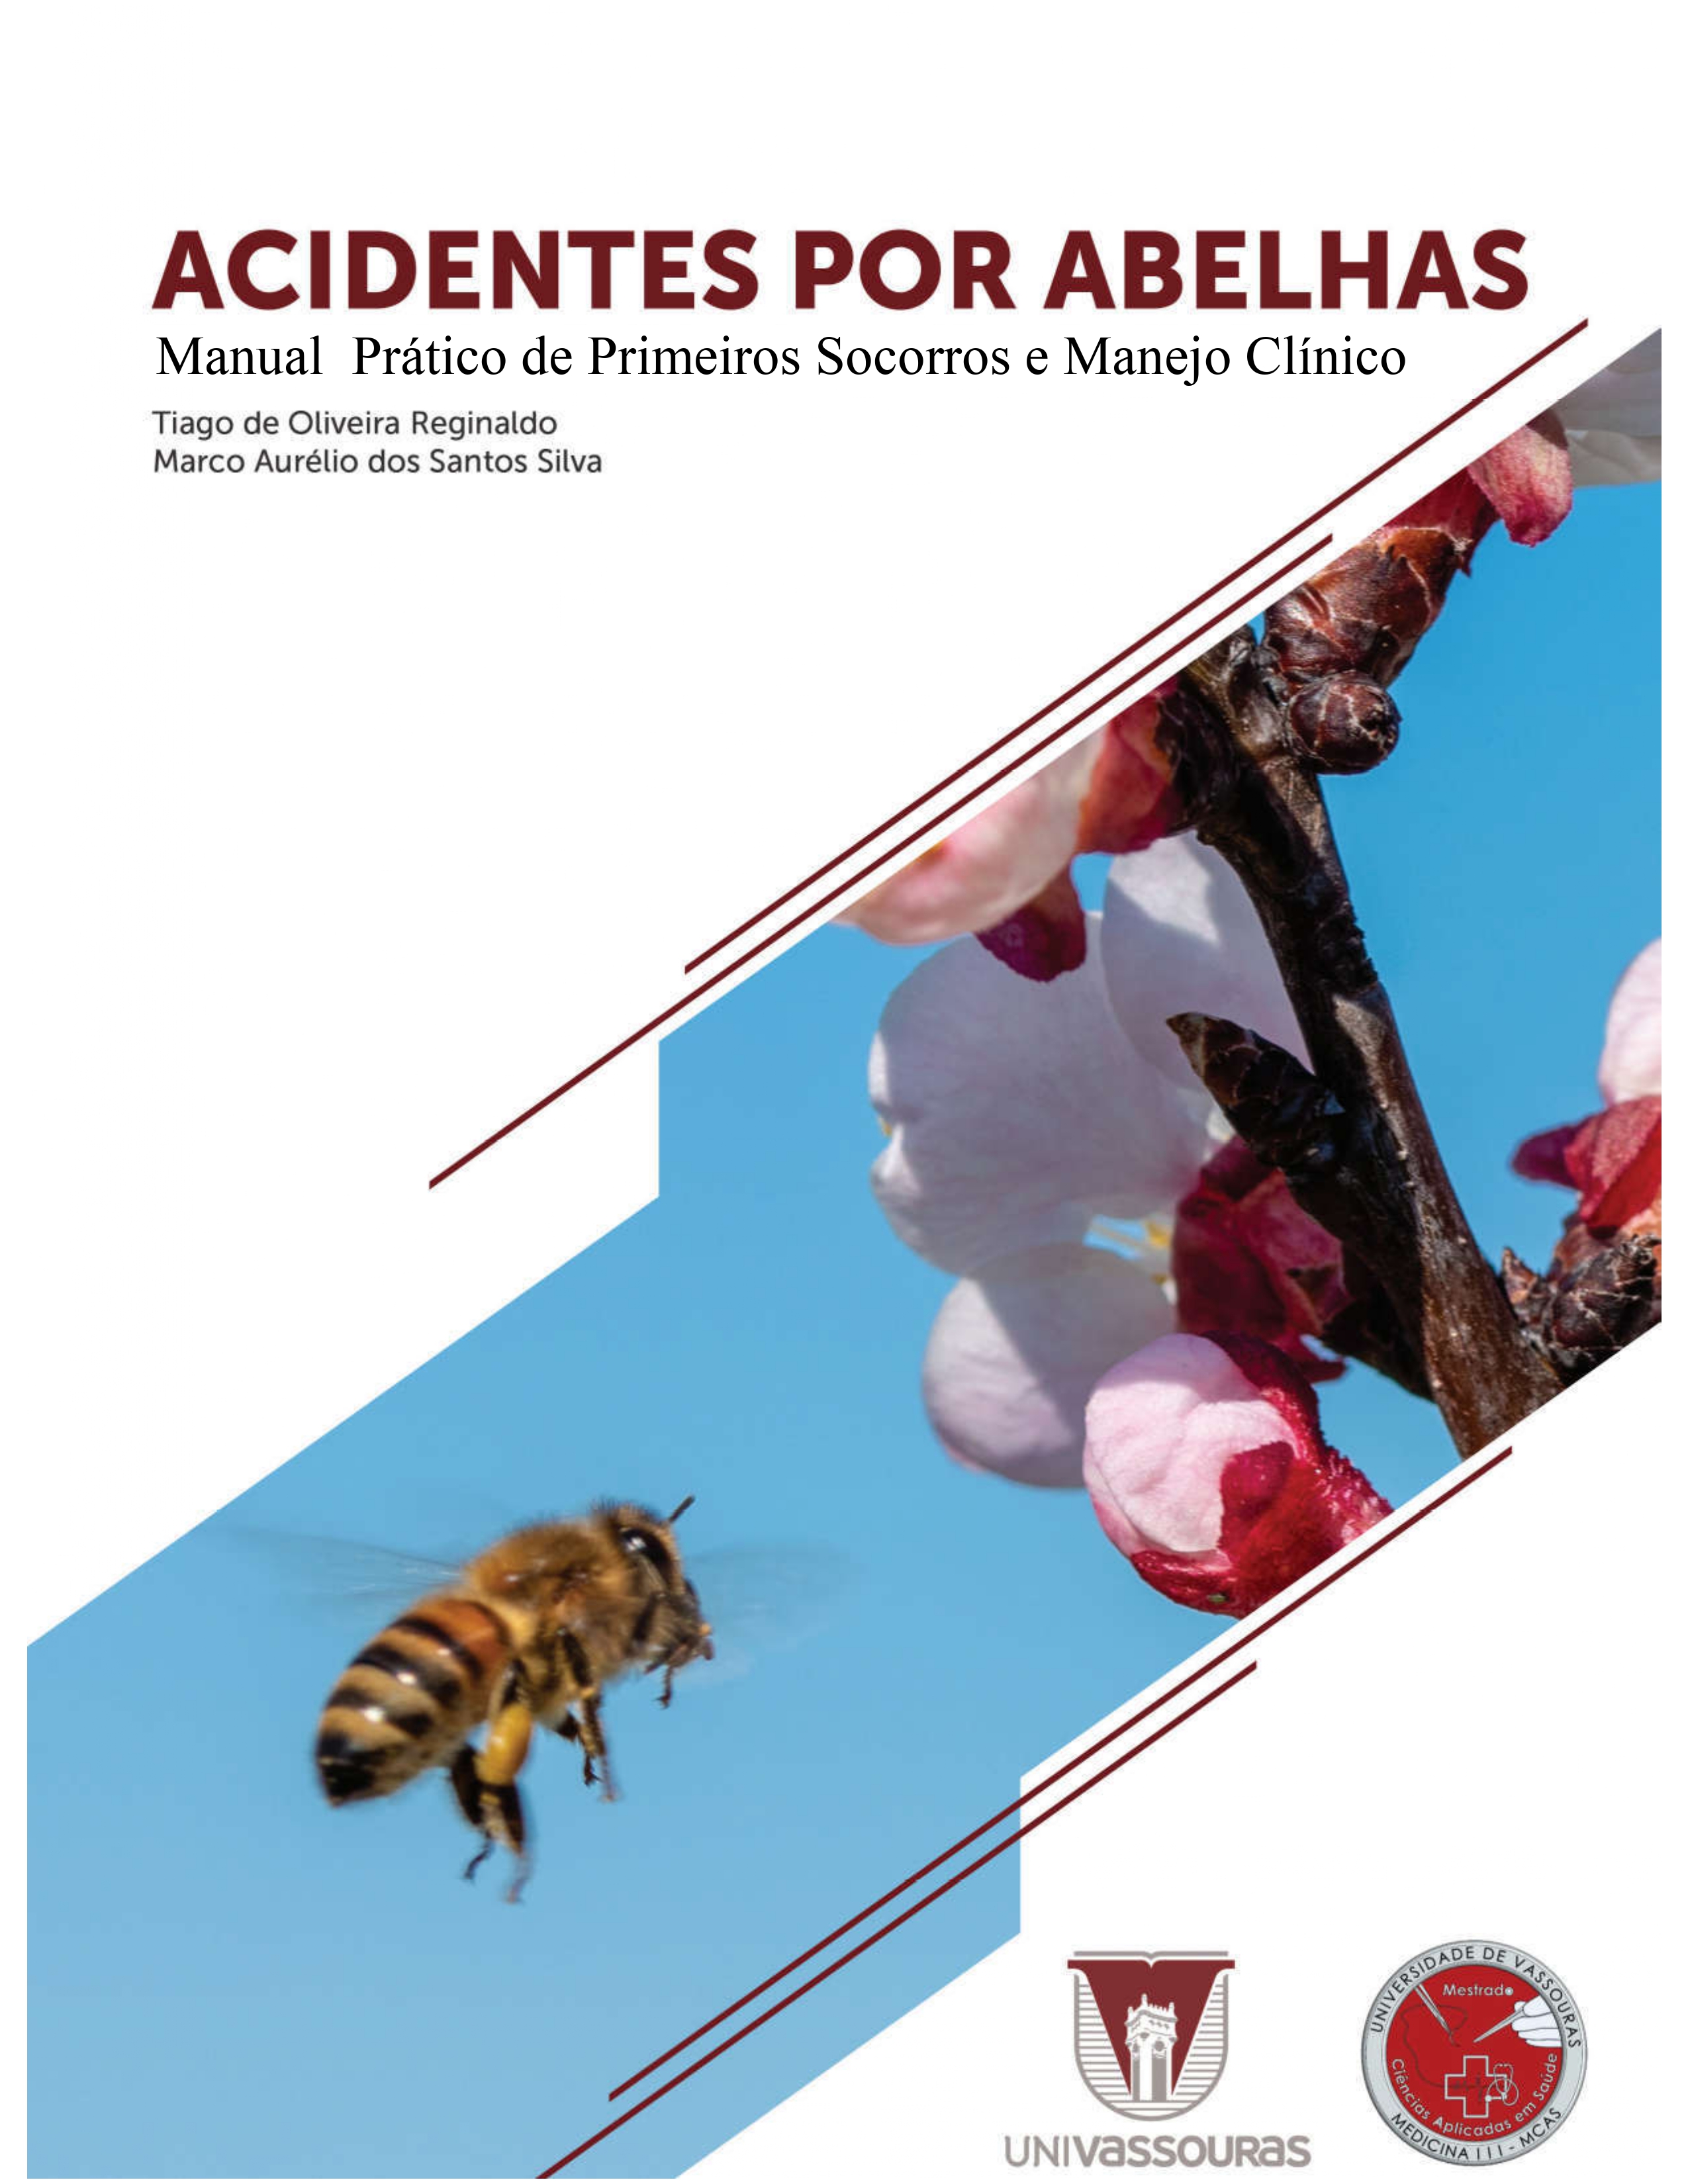 					View 2024: Acidentes por abelhas: Manual Prático de Primeiros Socorros e Manejo Clínico
				